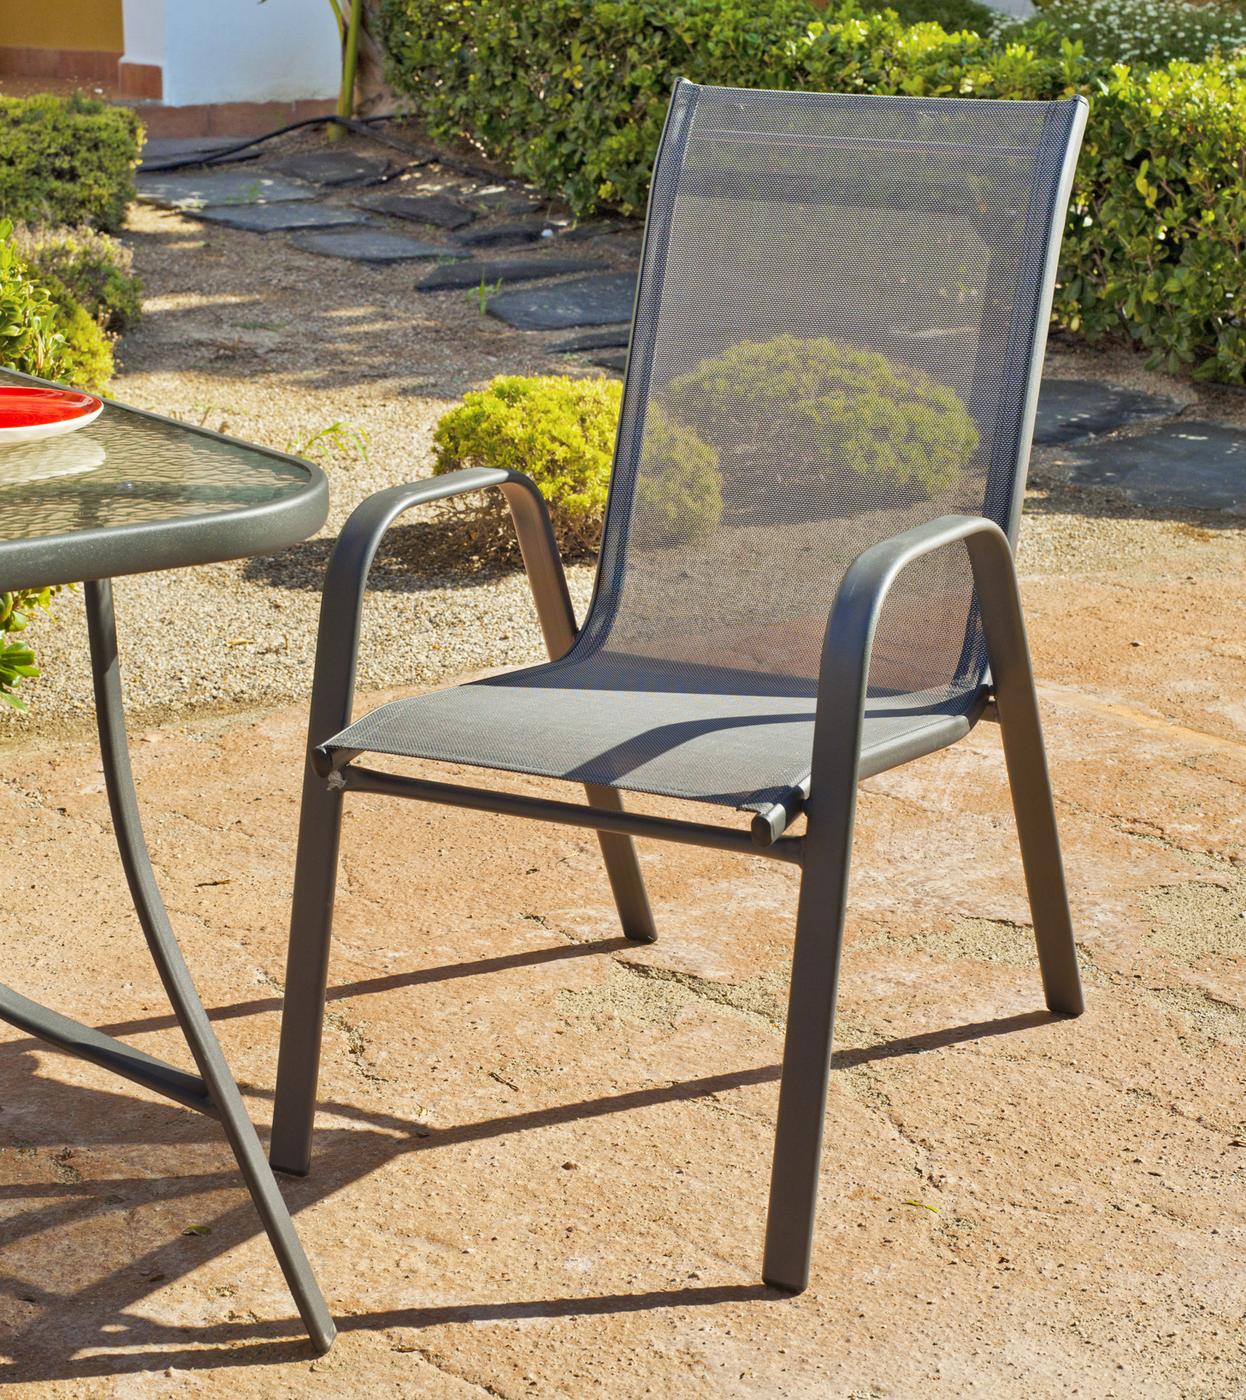 Set Acero Cordoba-Sulam 90-2 - Conjunto de acero color antracita: mesa redonda de 60 cm. con tapa de cristal templado + 2 sillones de acero y textilen